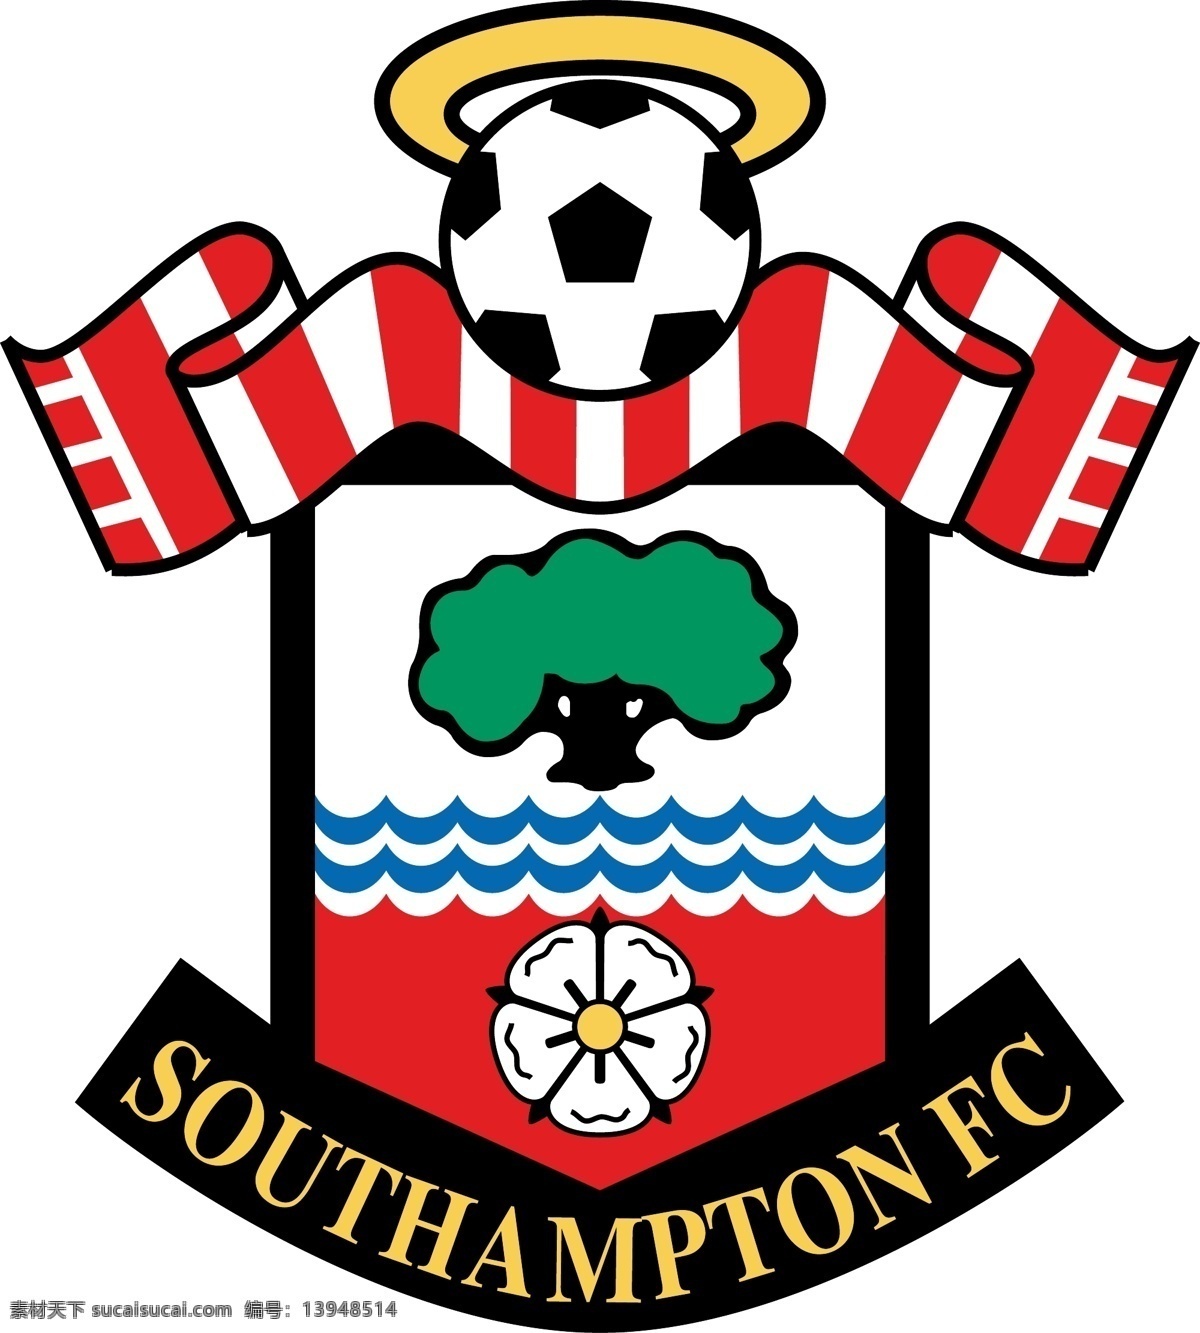 南安普顿 英超 巴克莱 世界 足球 切尔西 曼联 曼城 欧洲 欧冠 欧联杯 阿森纳 利物浦 足球标志 logo设计